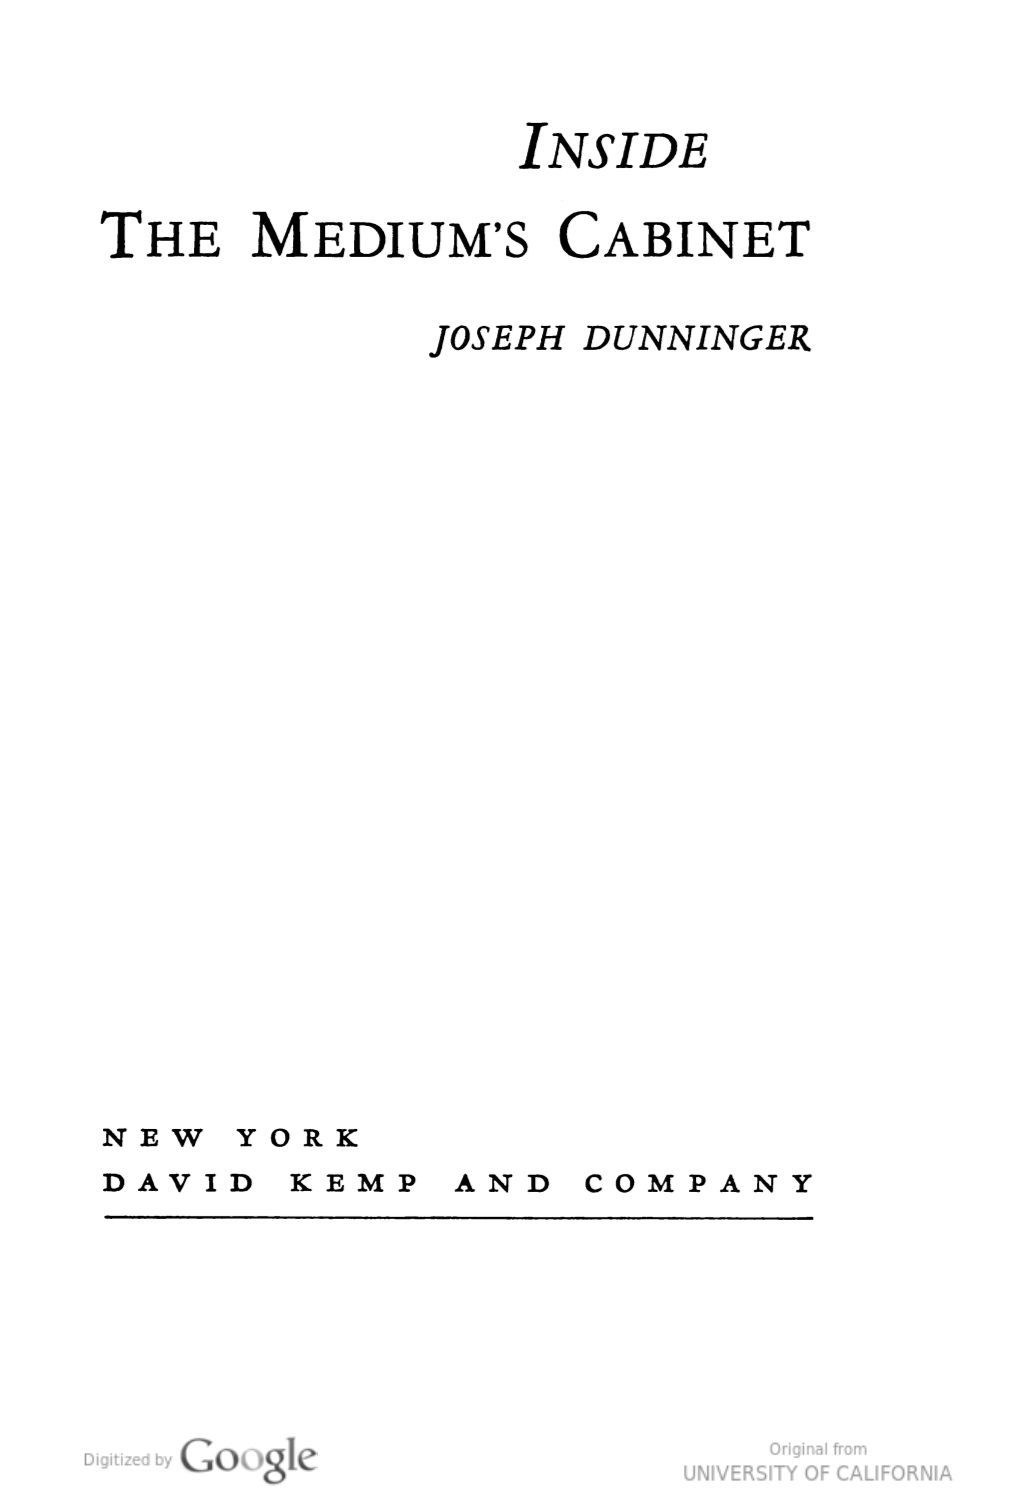 Inside the Medium's Cabinet [By] Joseph Dunninger